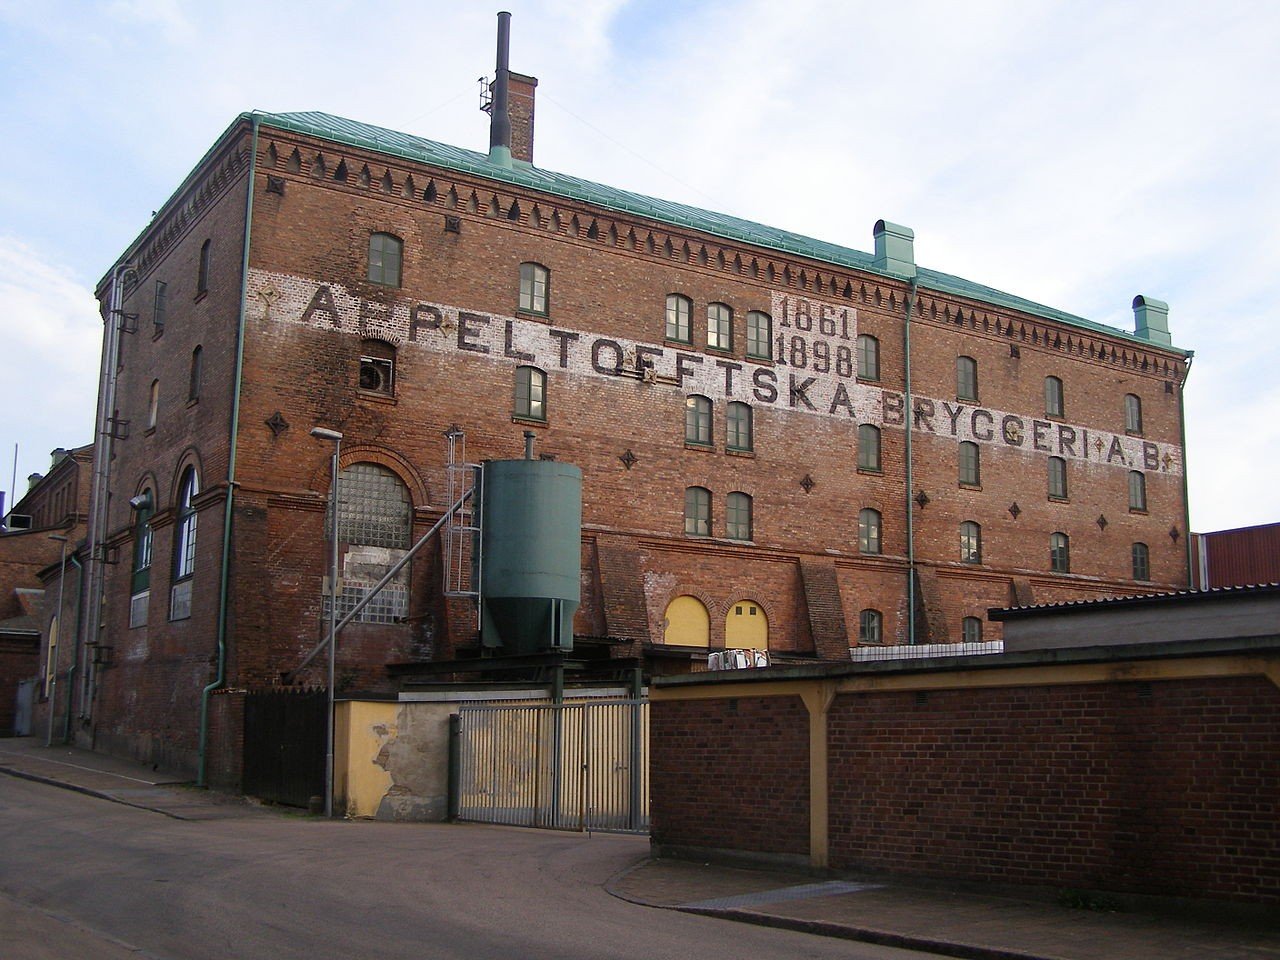 Krönleins Bryggeri brewery from Sweden